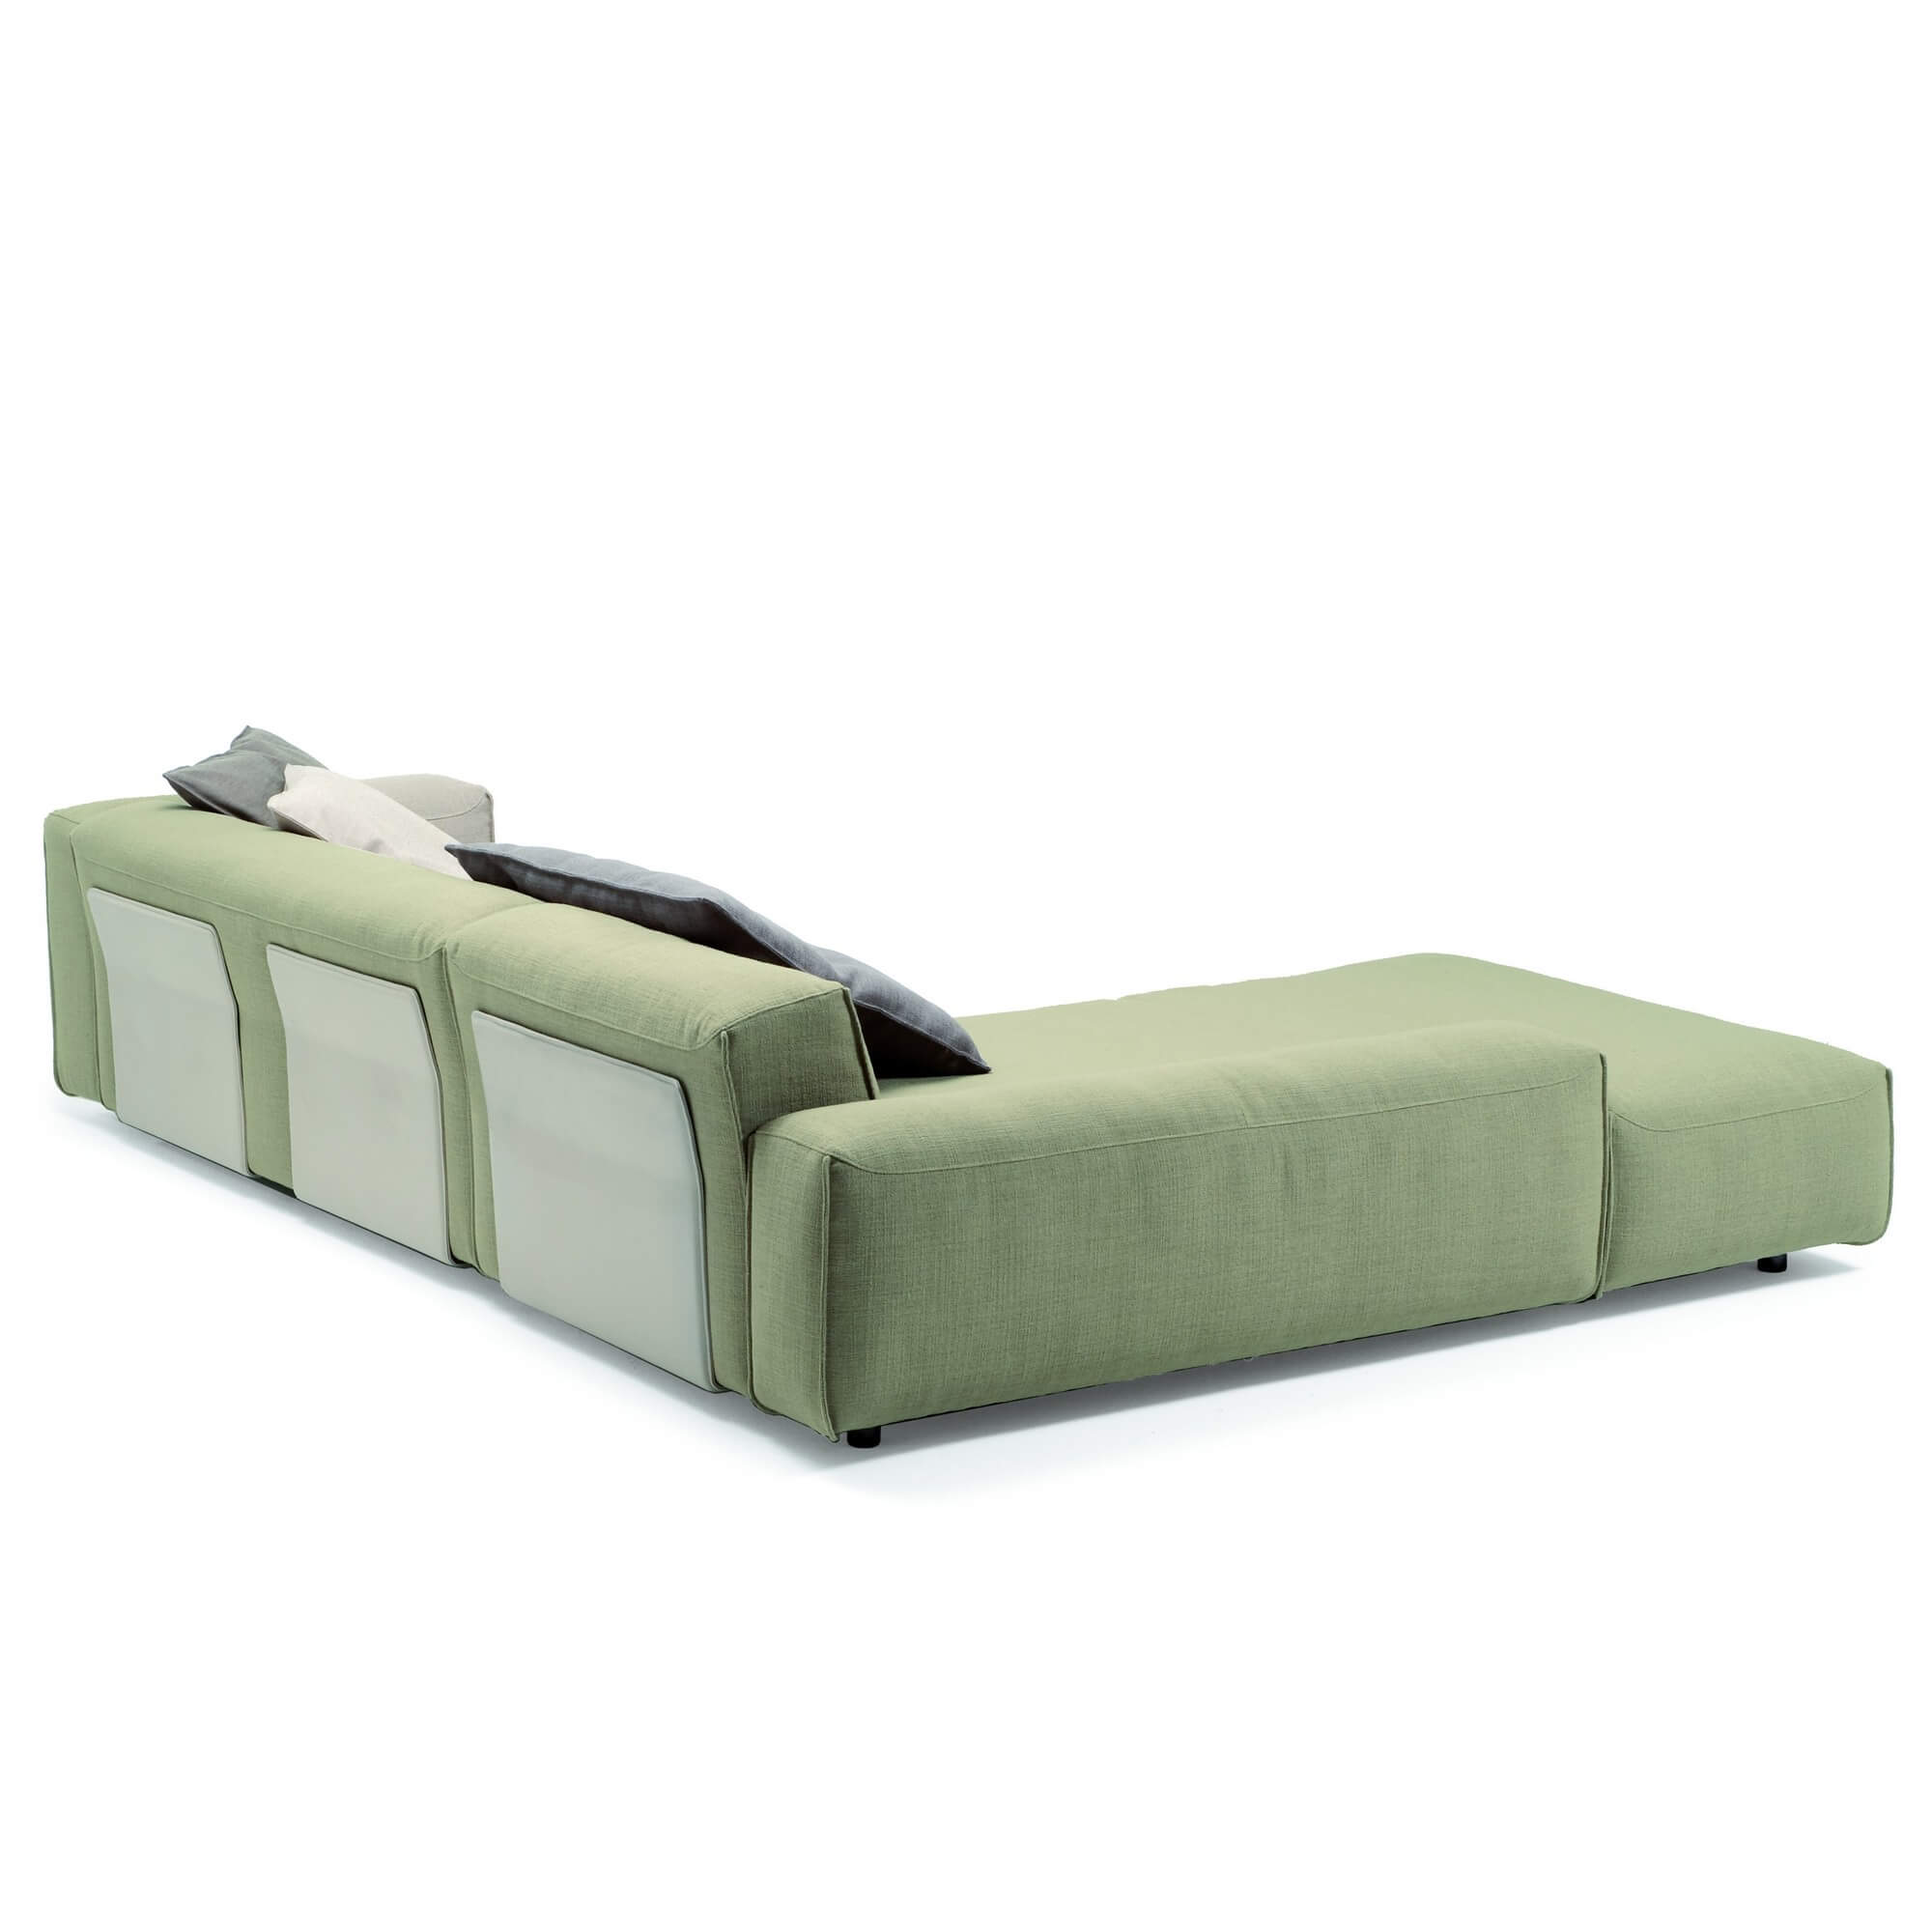 Модульный кожаный диван Rolf Benz Mio из Германии